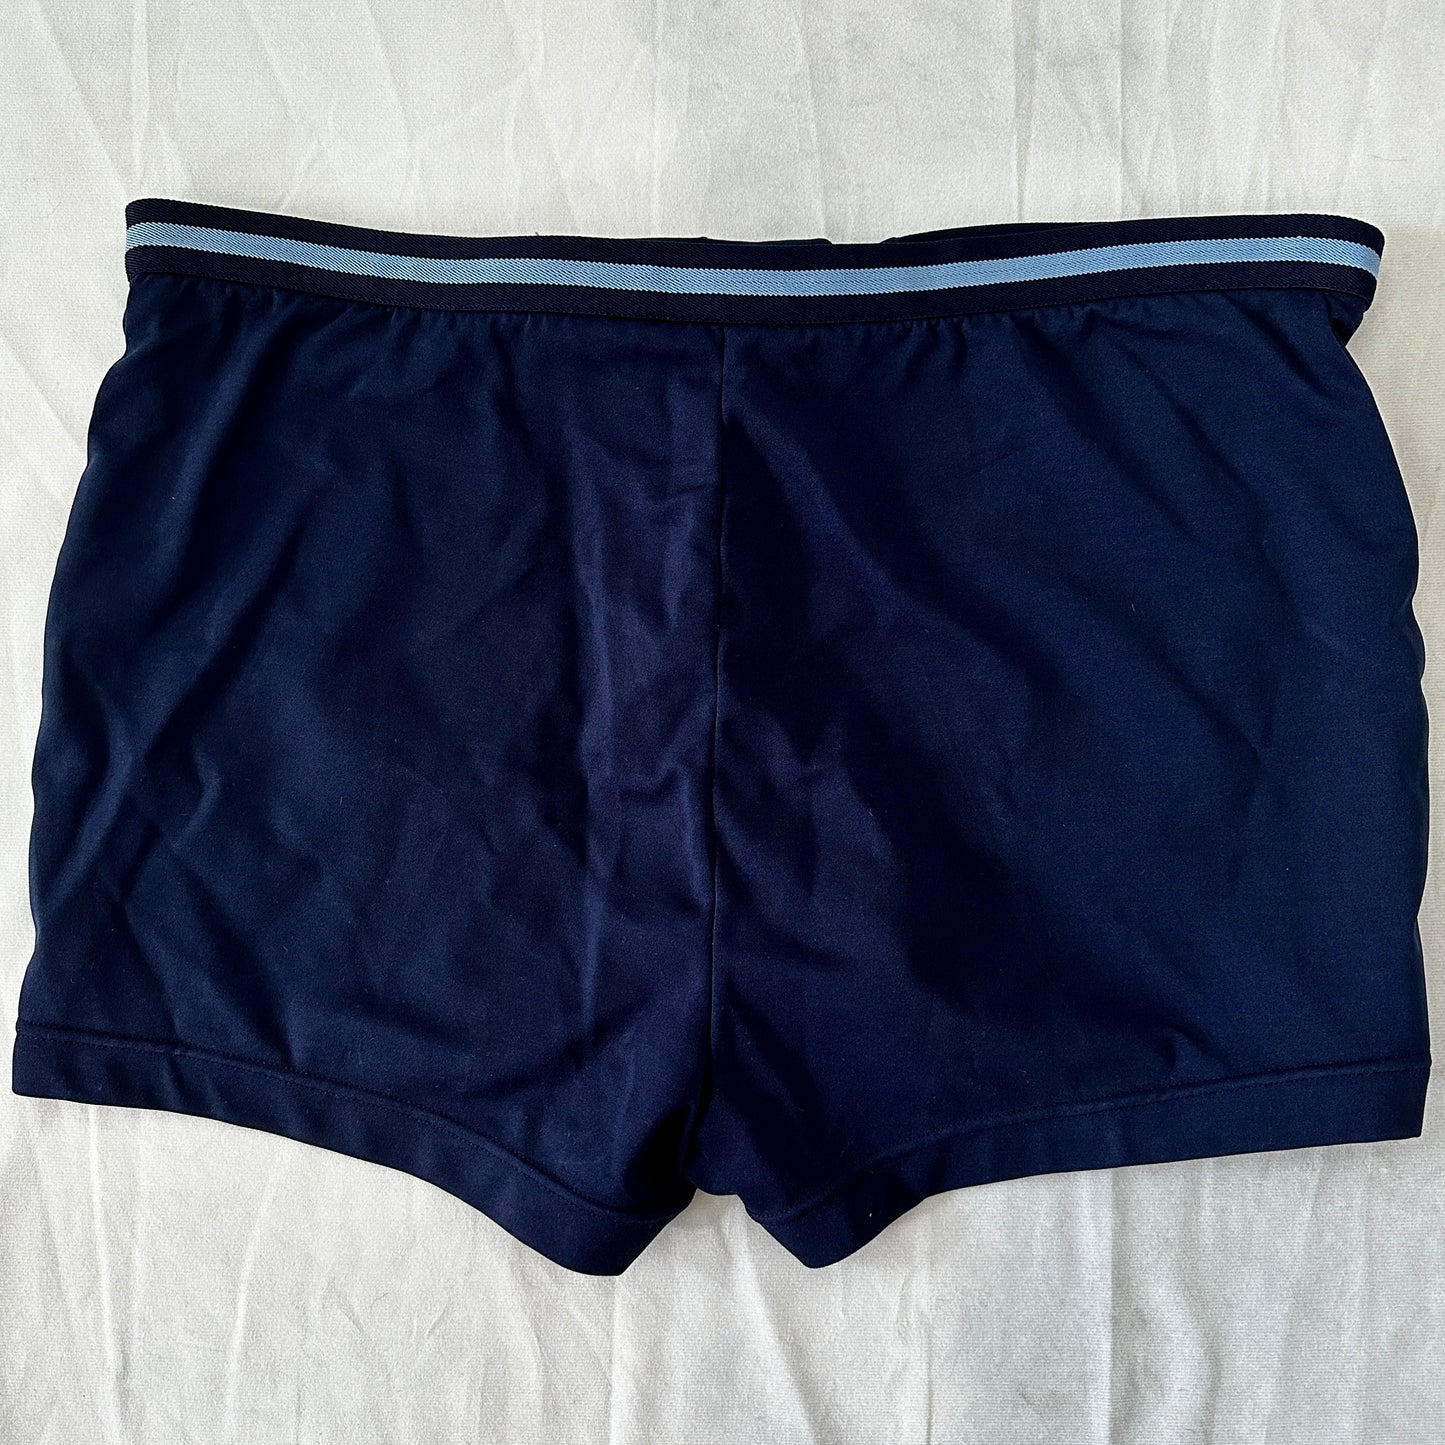 80s Vintage Tennis Shorts - Navy - XL